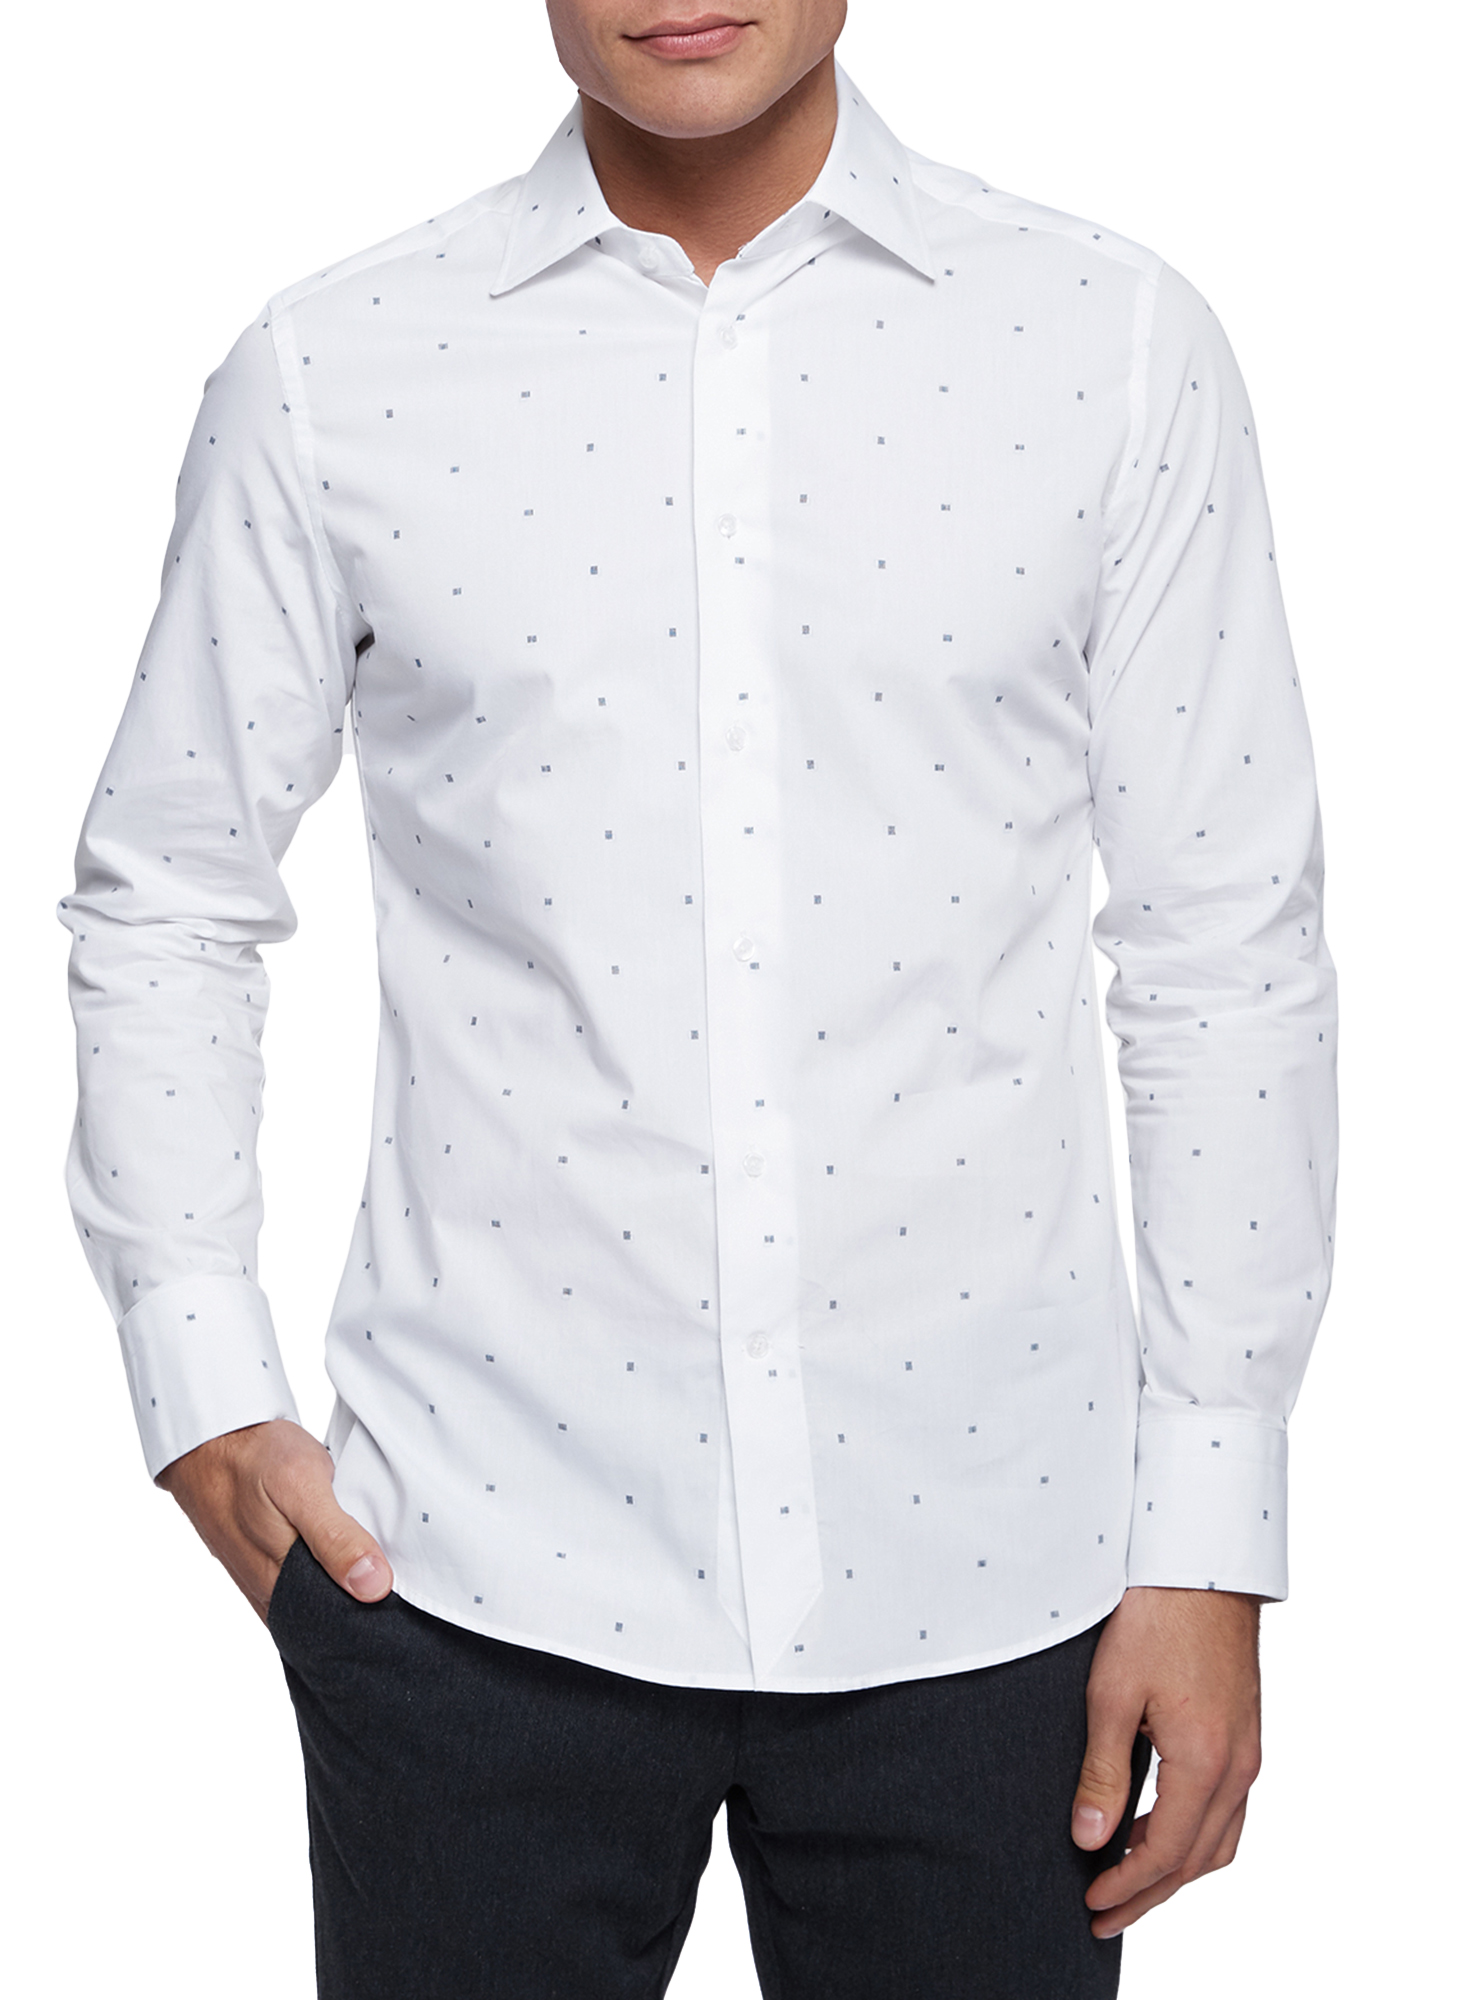 Рубашка мужская oodji 3B140011M белая XL